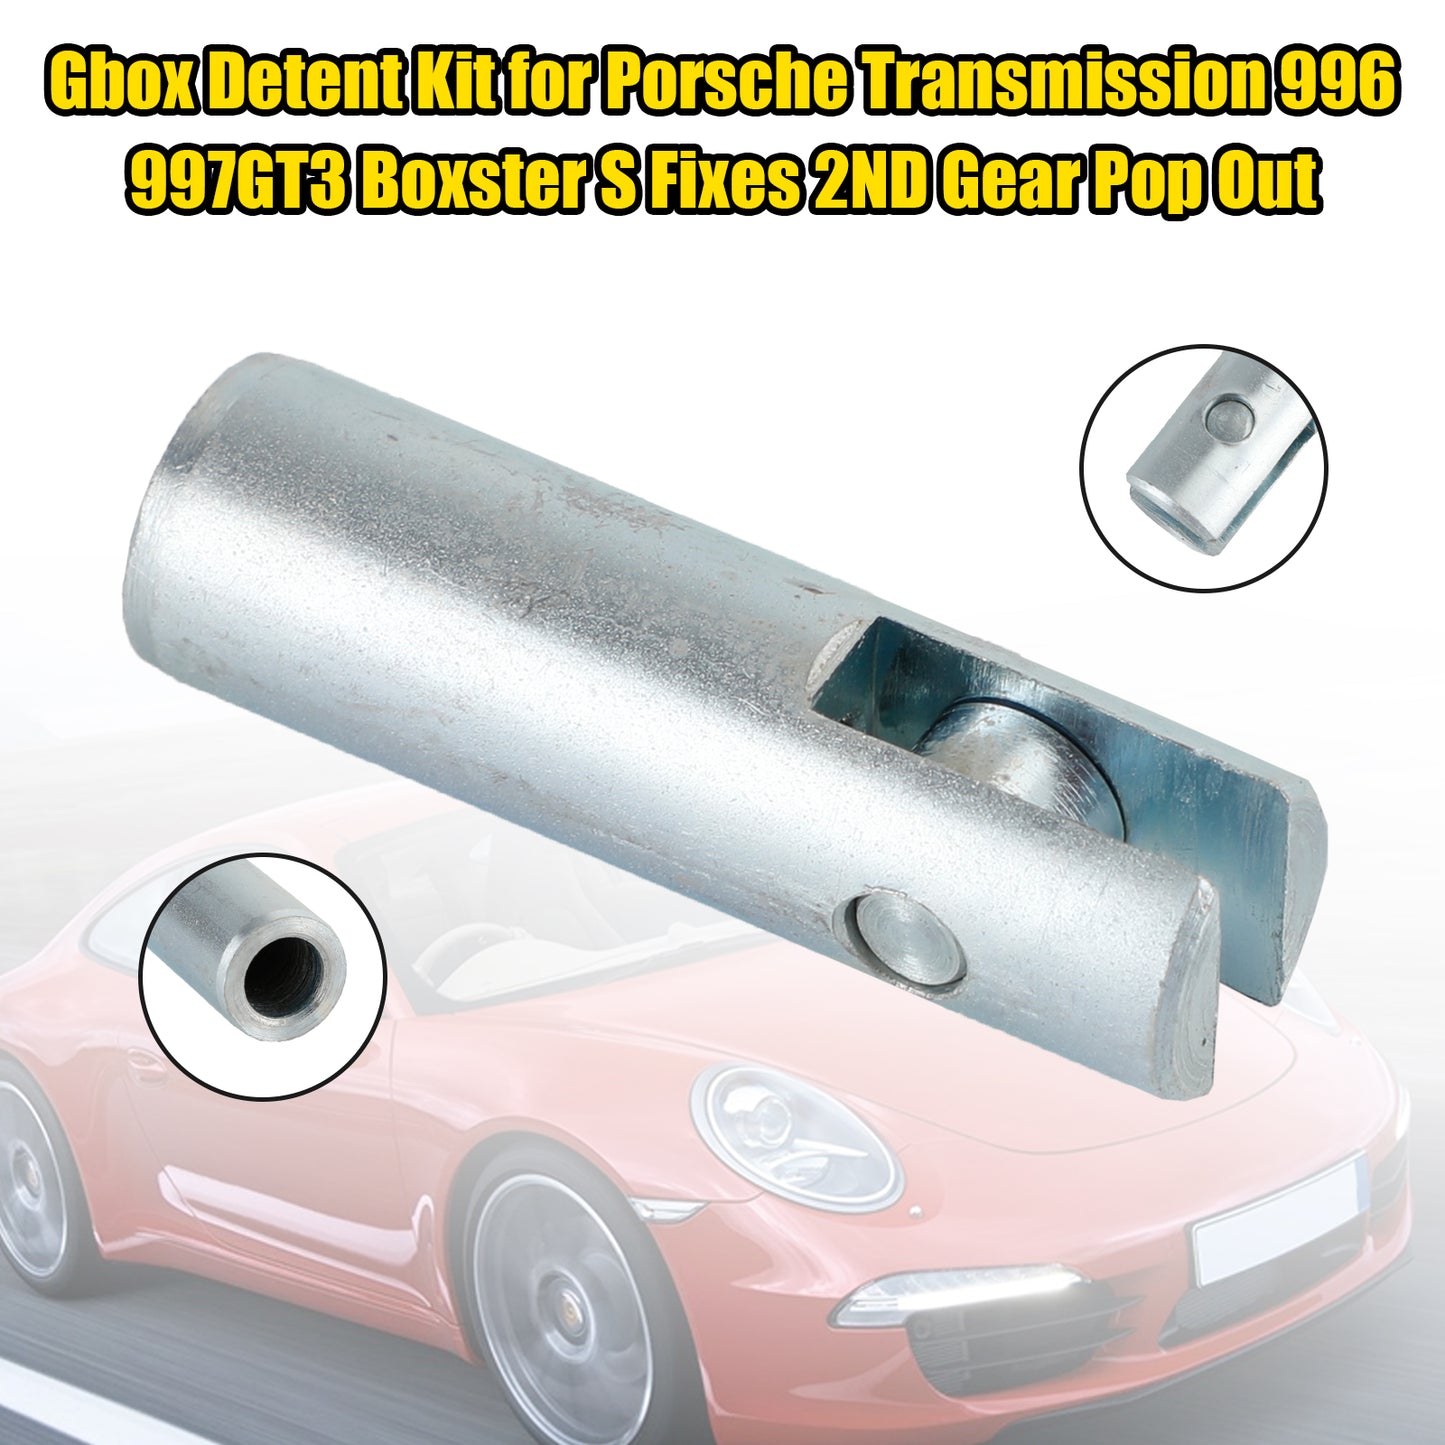 Gbox Rastenkit für Porsche Getriebe 996 997GT3 Boxster S fixiert 2. Gang Pop